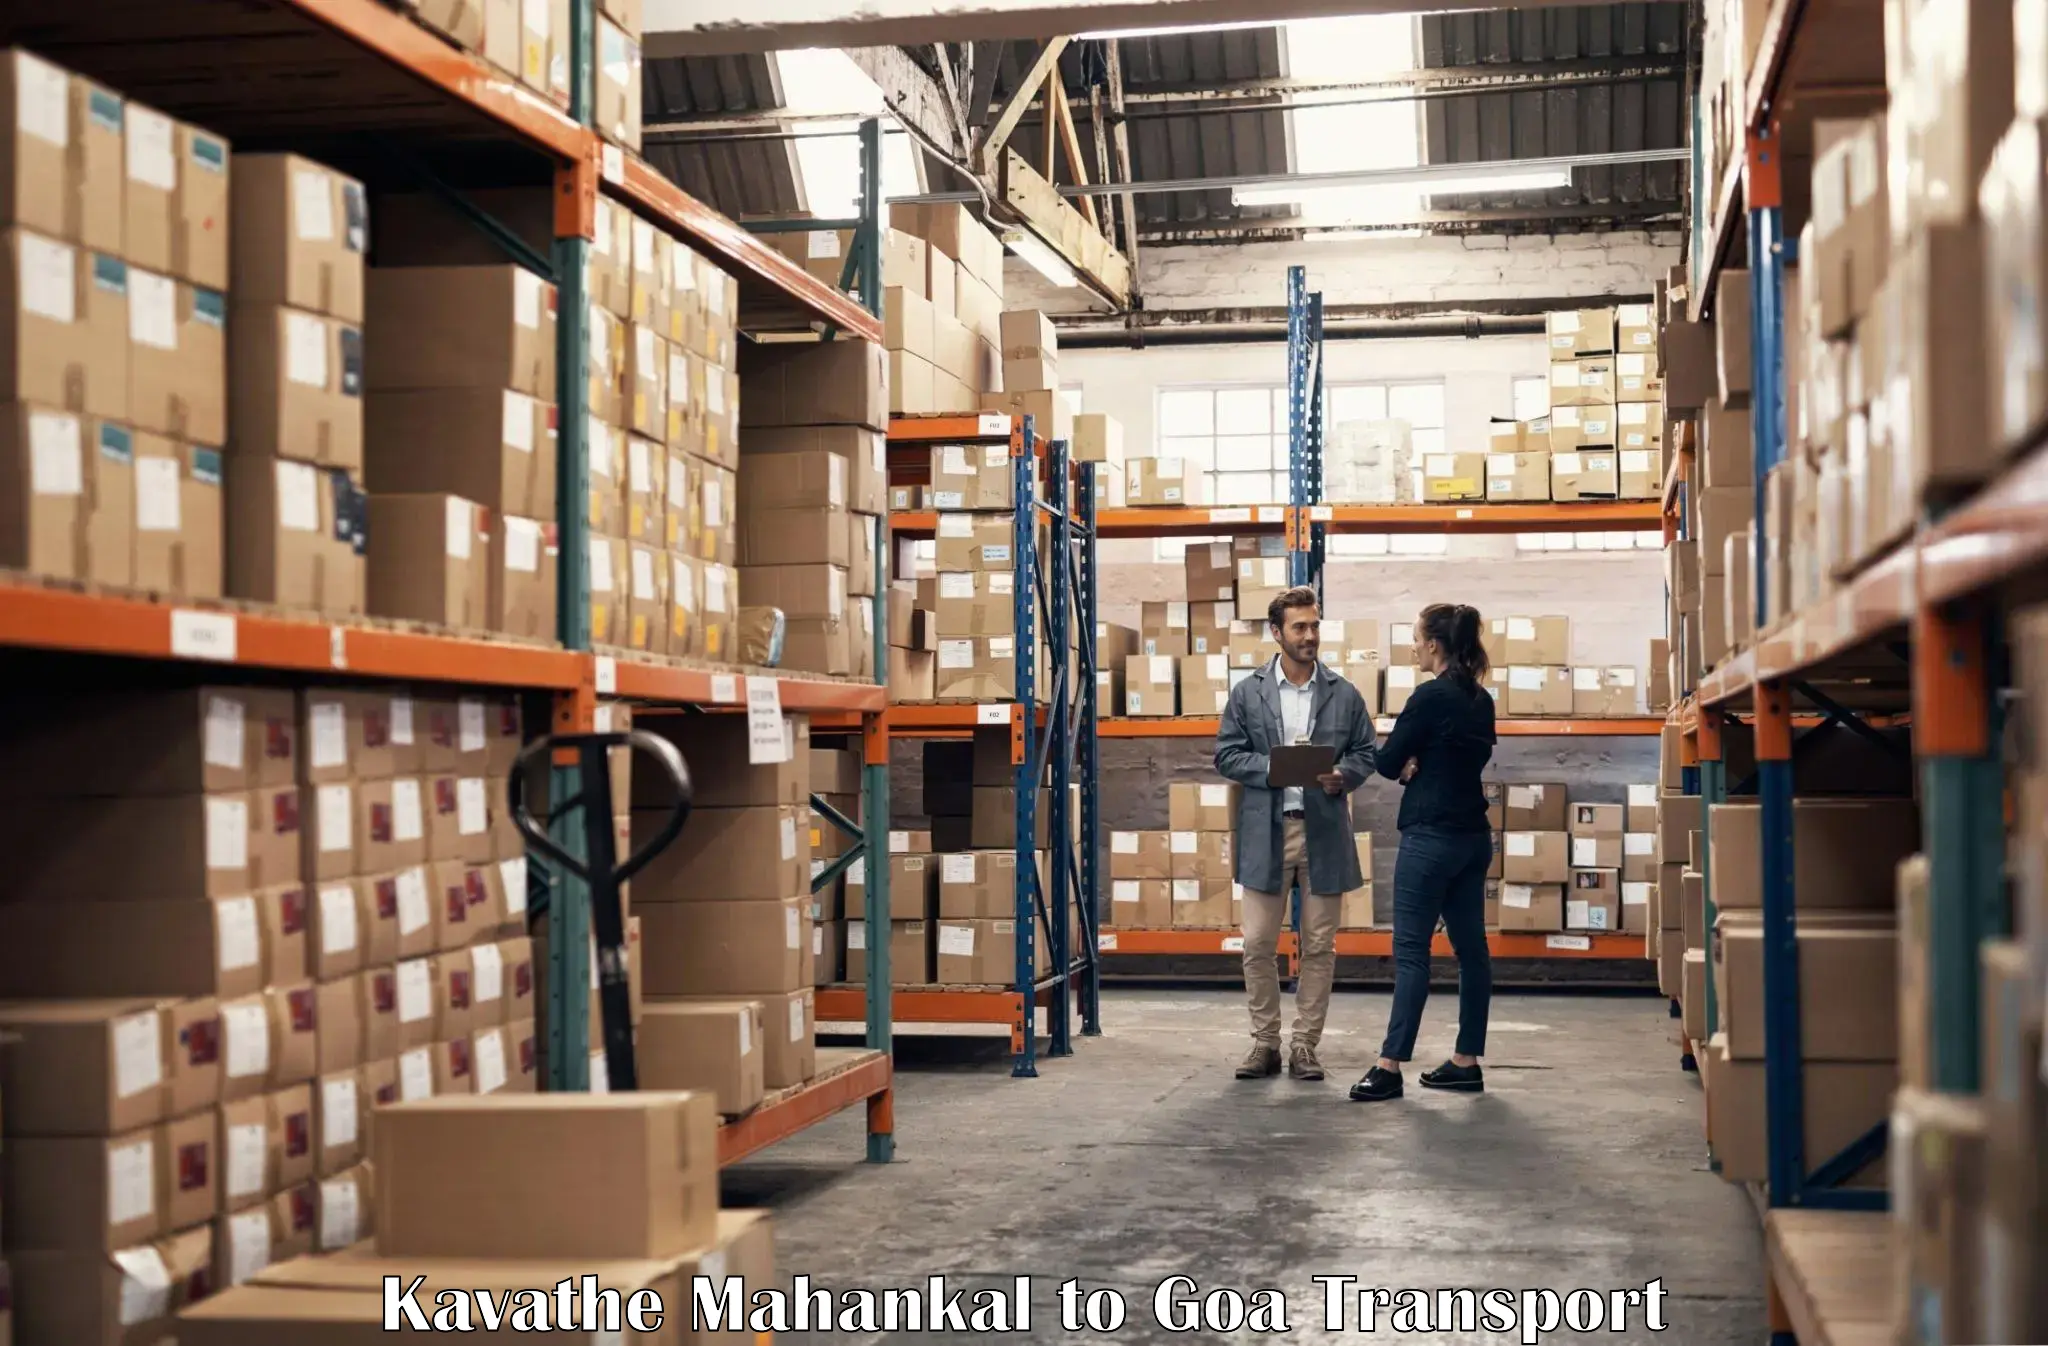 Cargo transportation services Kavathe Mahankal to Panjim